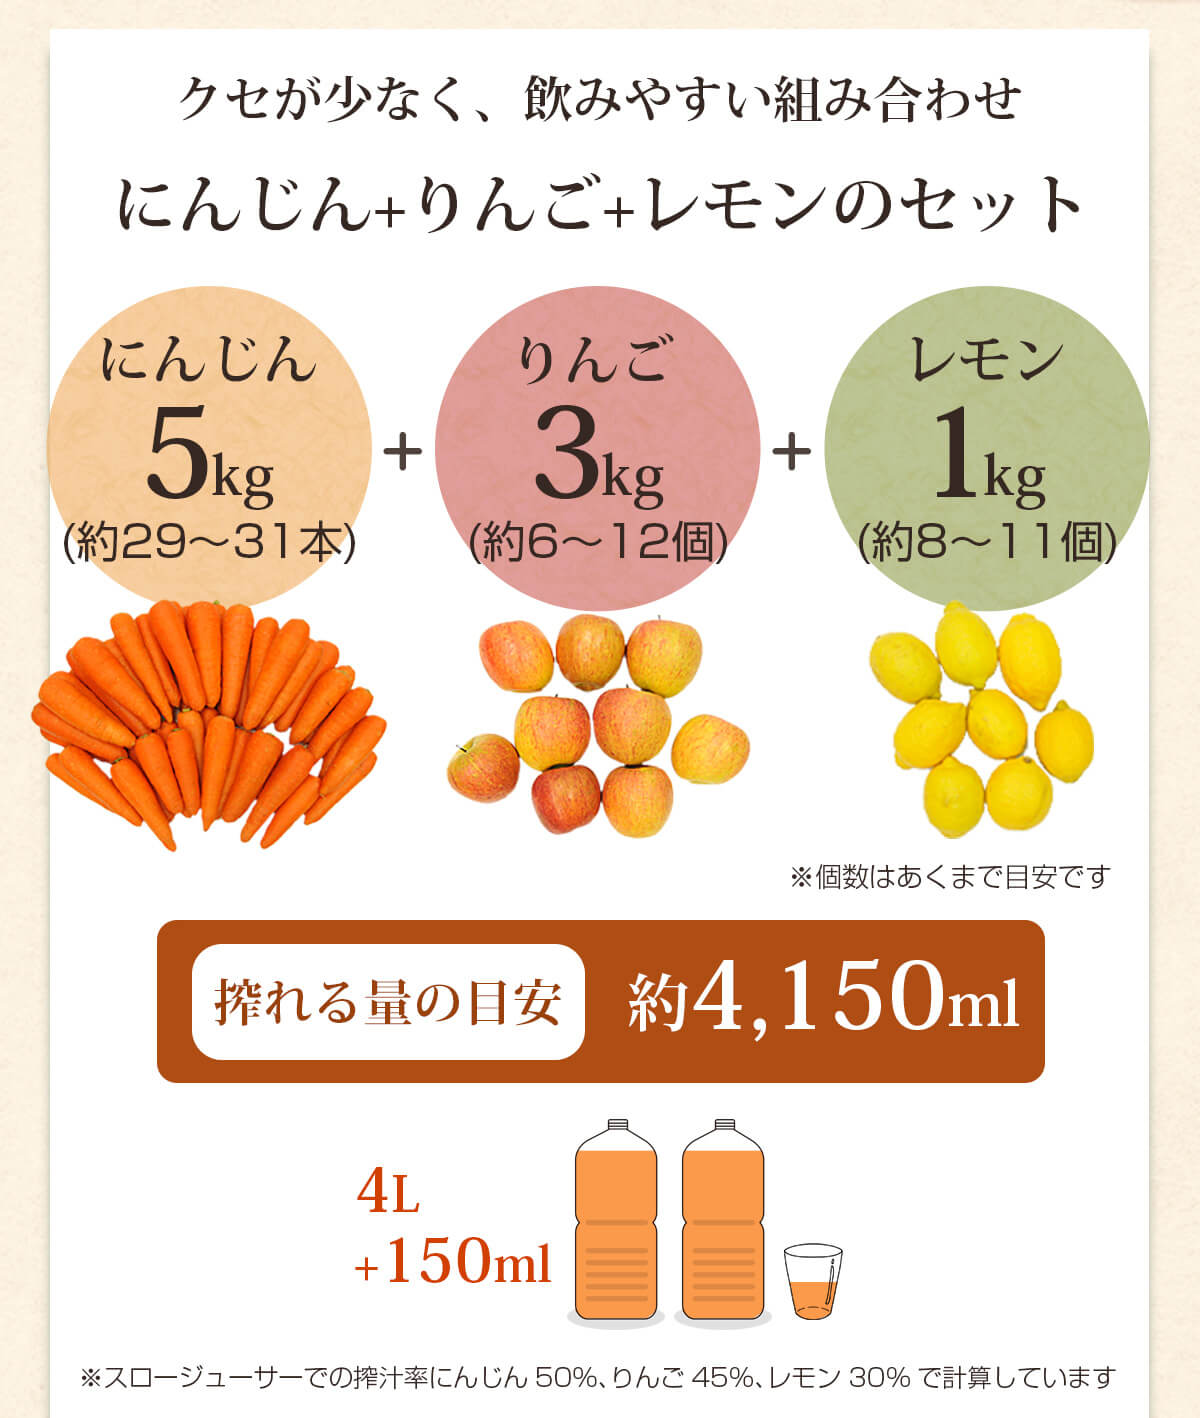 人参5kg＋りんご3kg＋レモン1kgで搾れる量の目安は約4,150ml